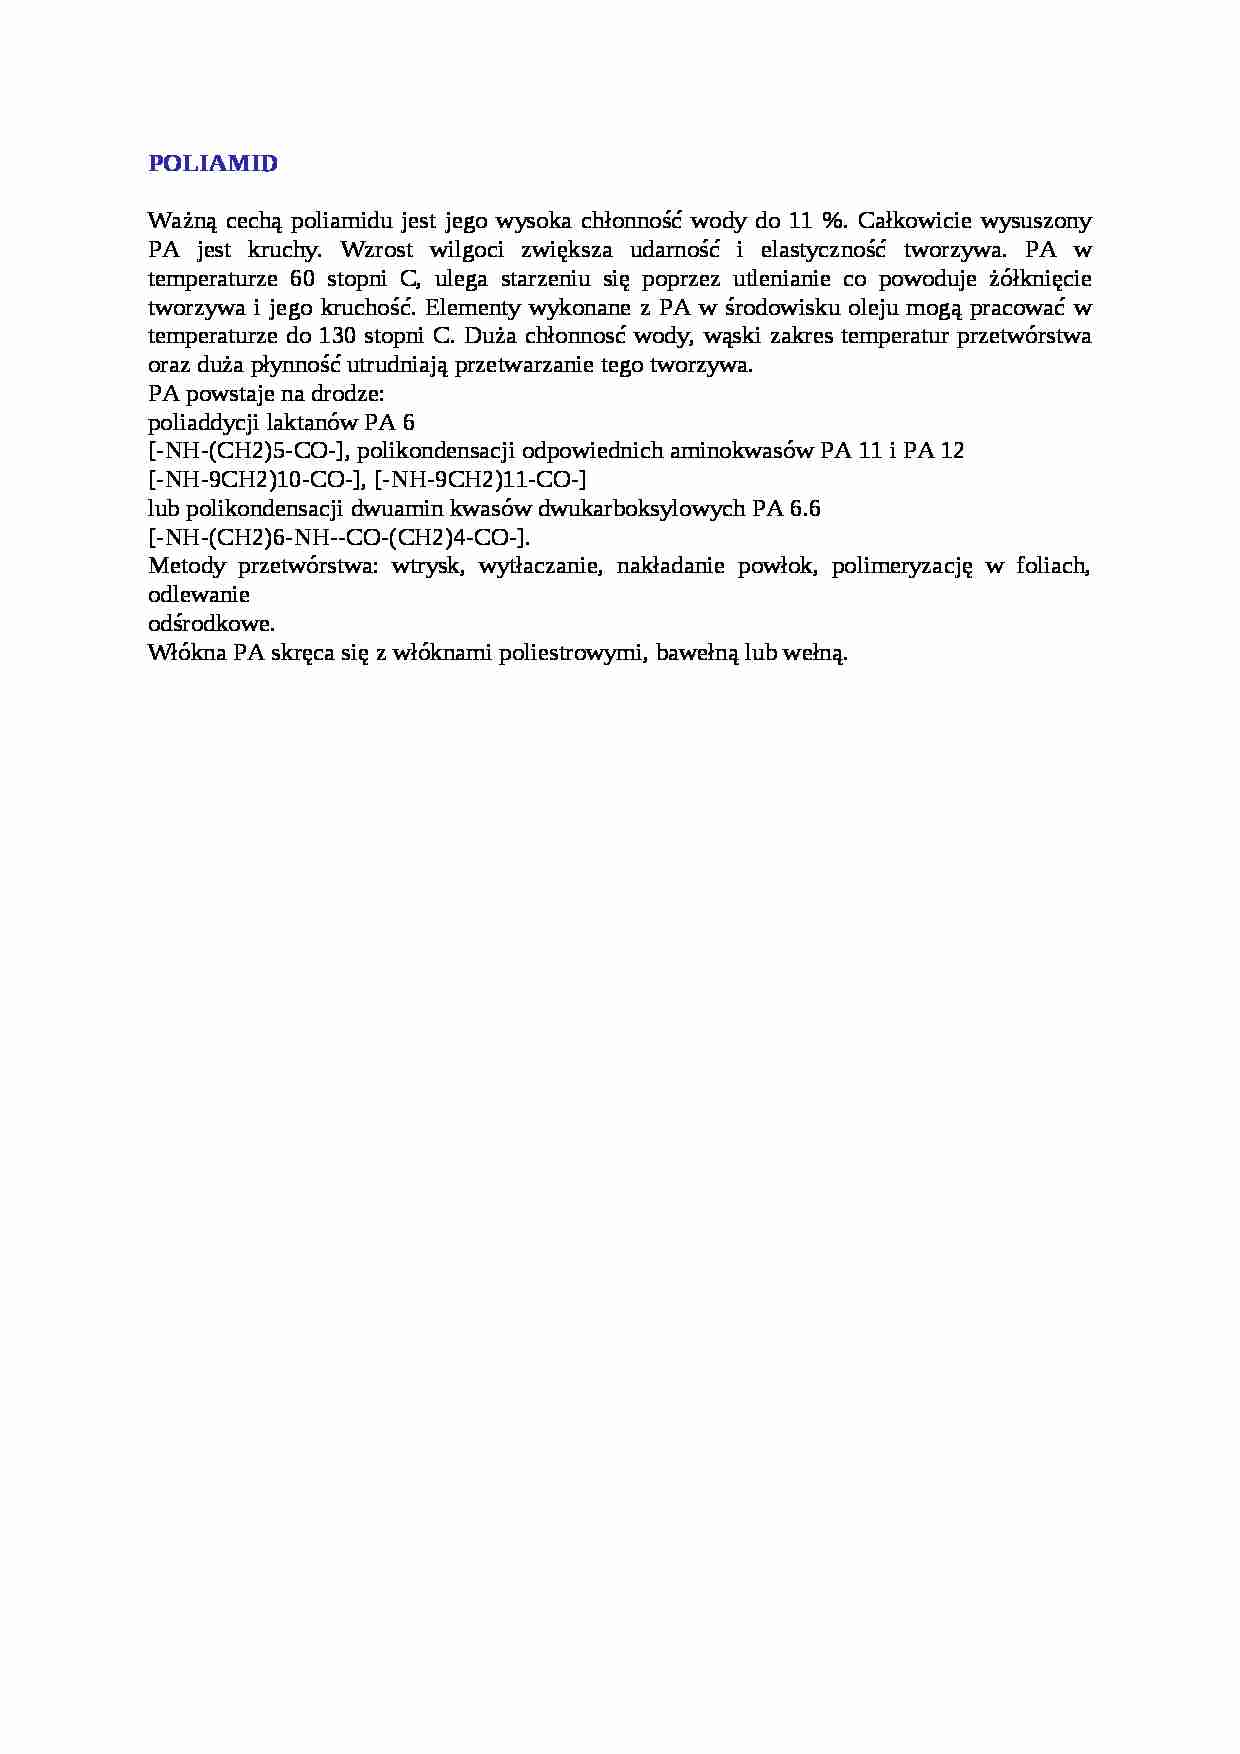 Poliamid-opracowanie - strona 1